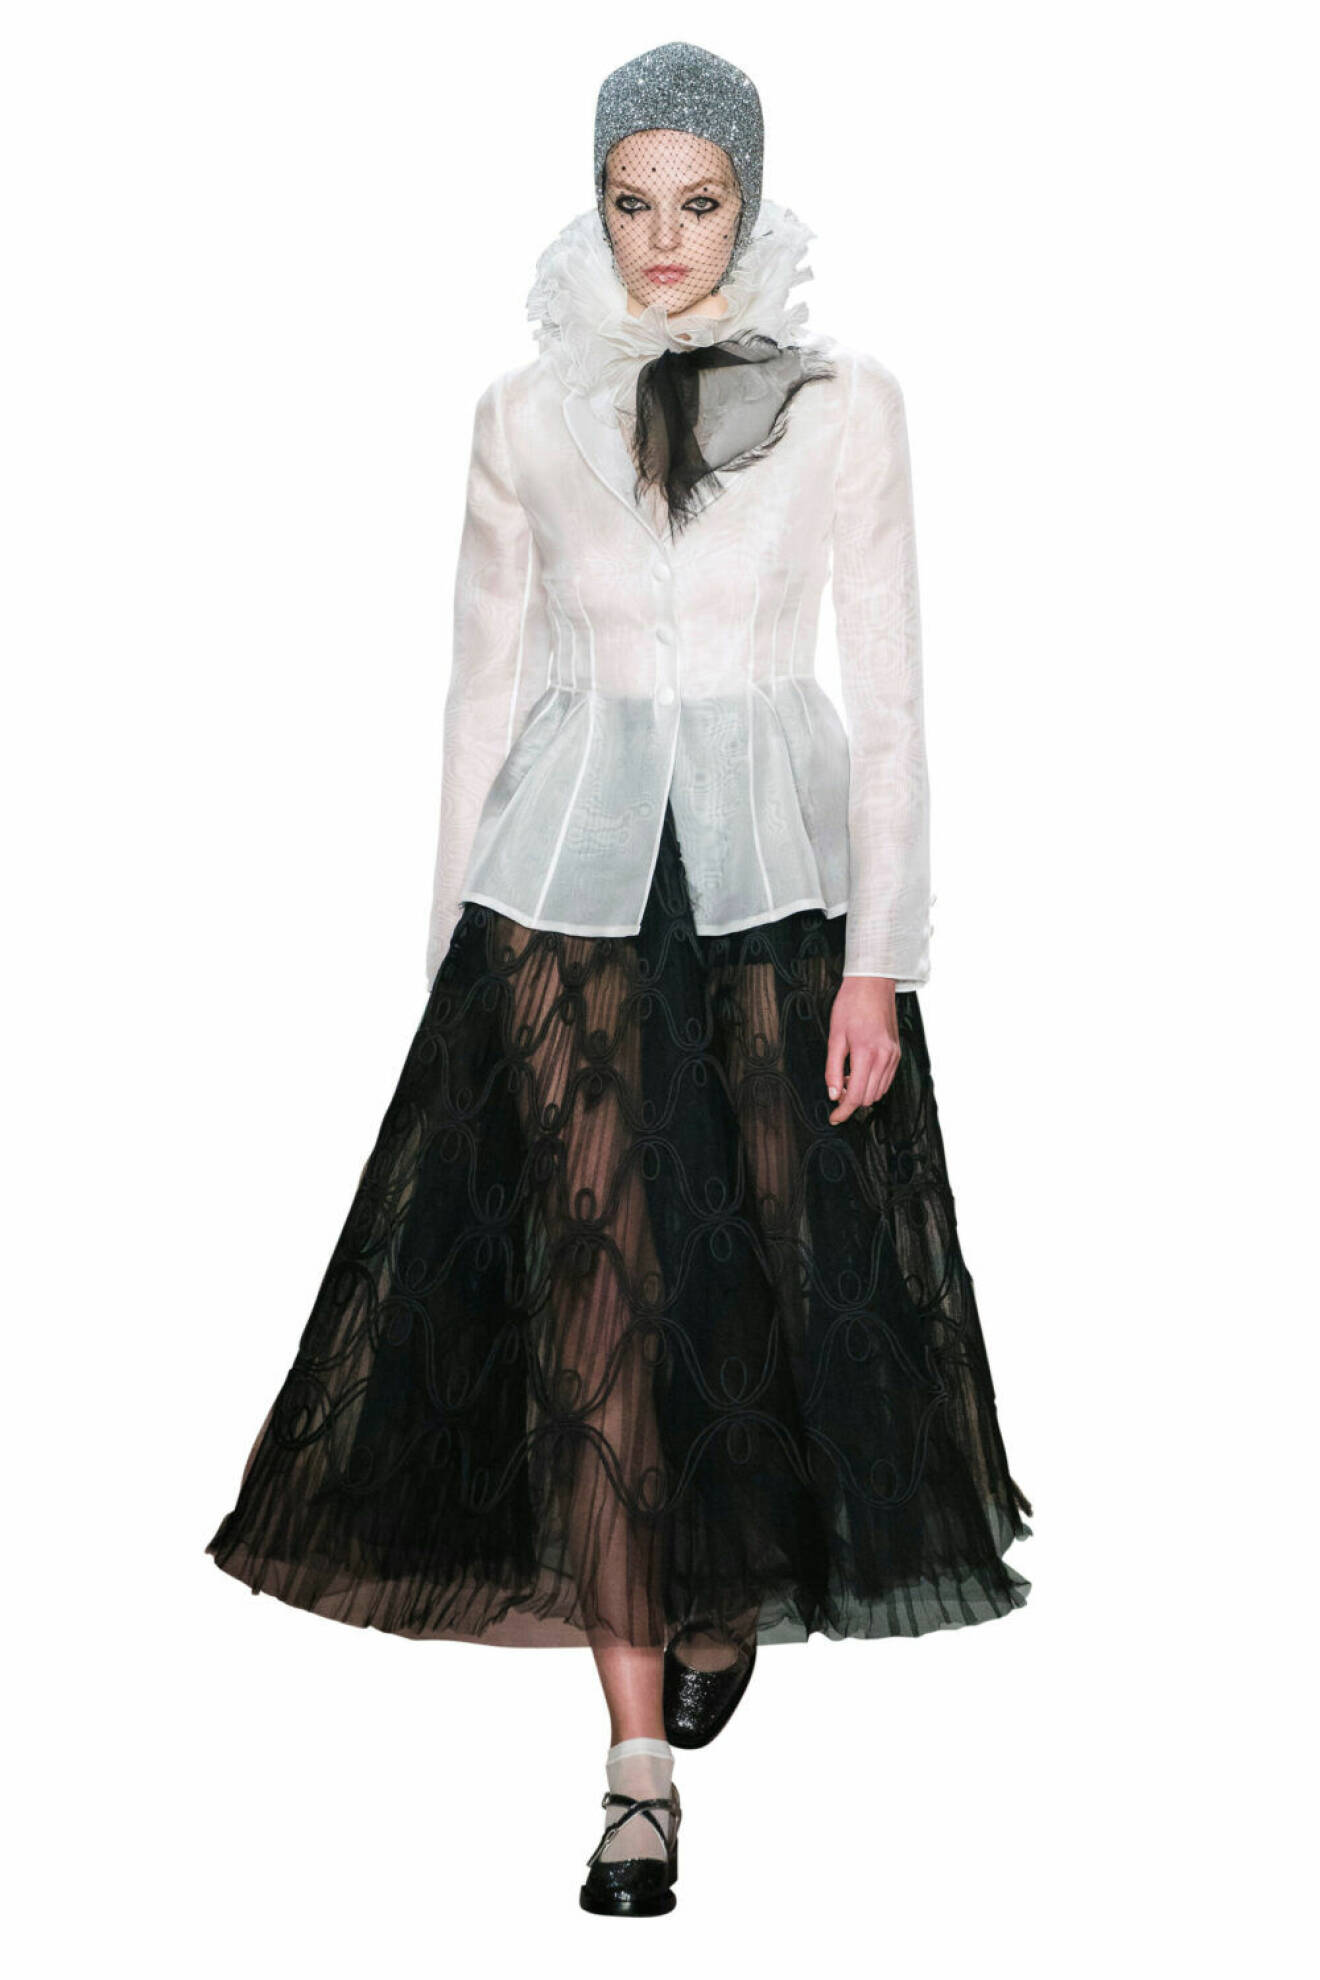 Vit spetsjacka och svart tyllkjol från Diors haute couture–visning SS19